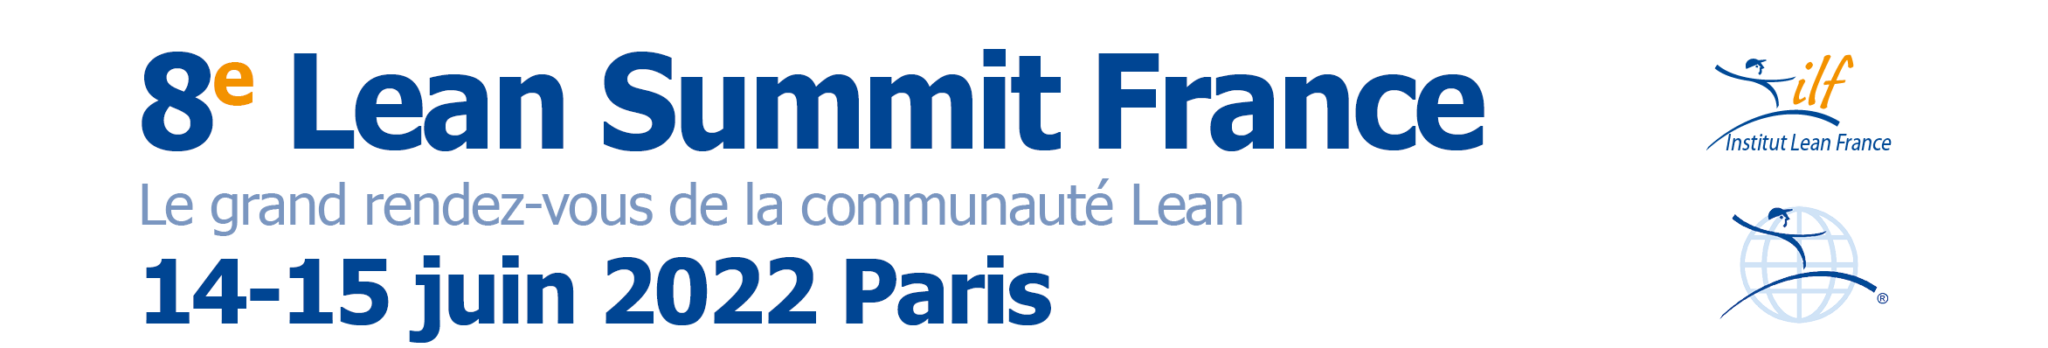 Lean Summit France 2022